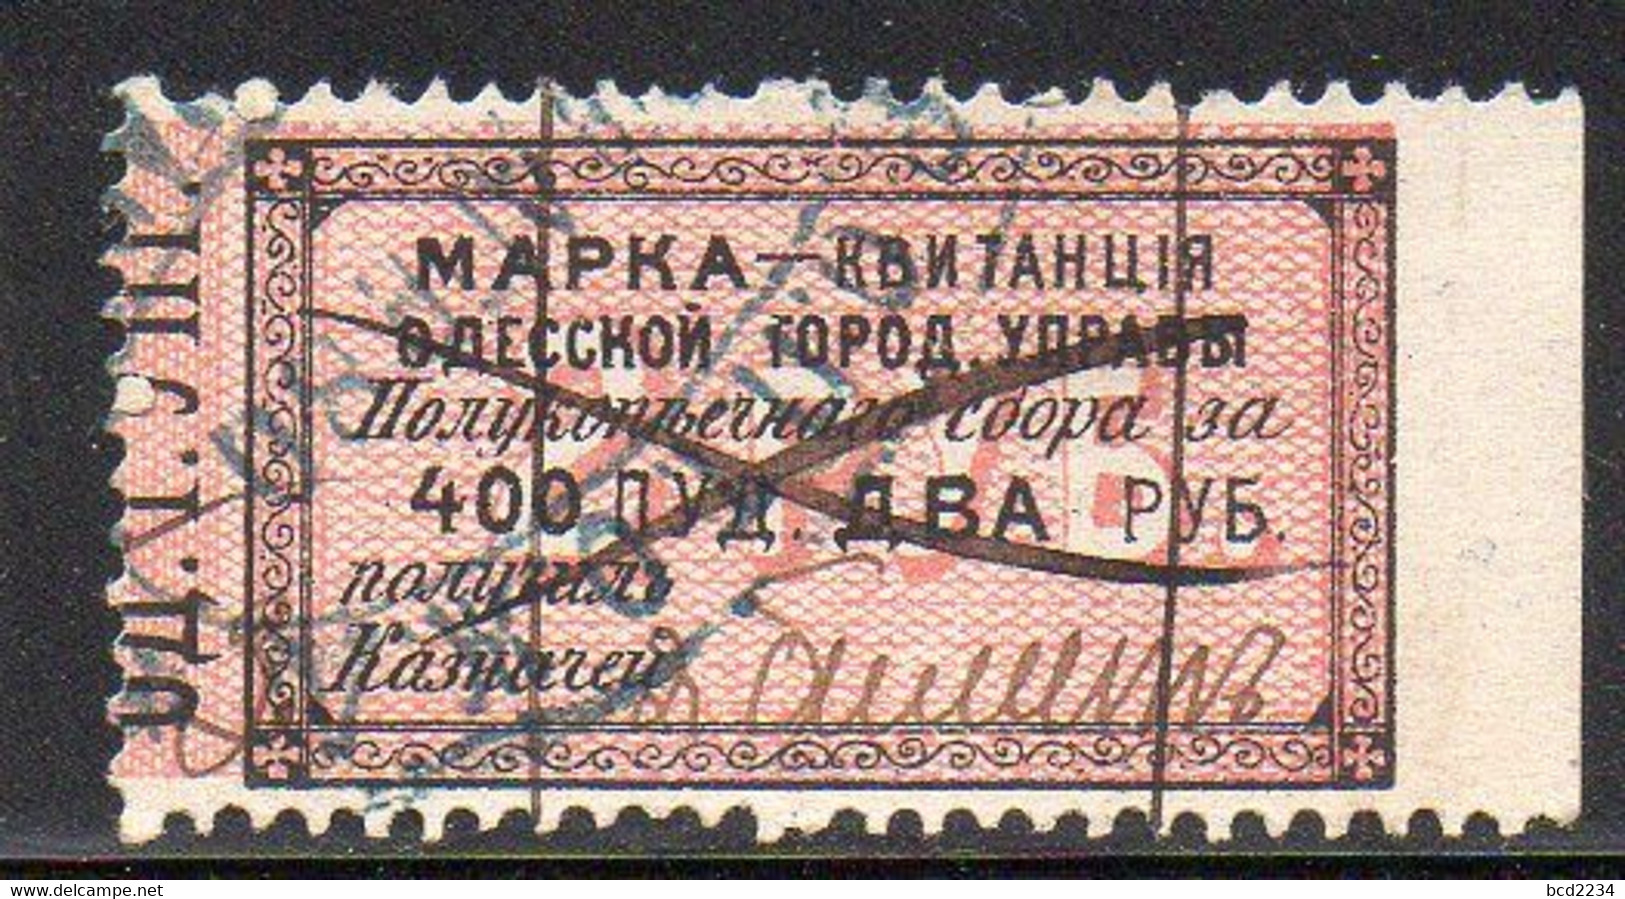 RUSSIA UKRAINE ODESSA MUNICIPAL REVENUE 1879 2R (400) BLACK & PINK BAREFOOT #23 BORDER WITH SCROLLS MARGIN RIGHT FISCAUX - Steuermarken